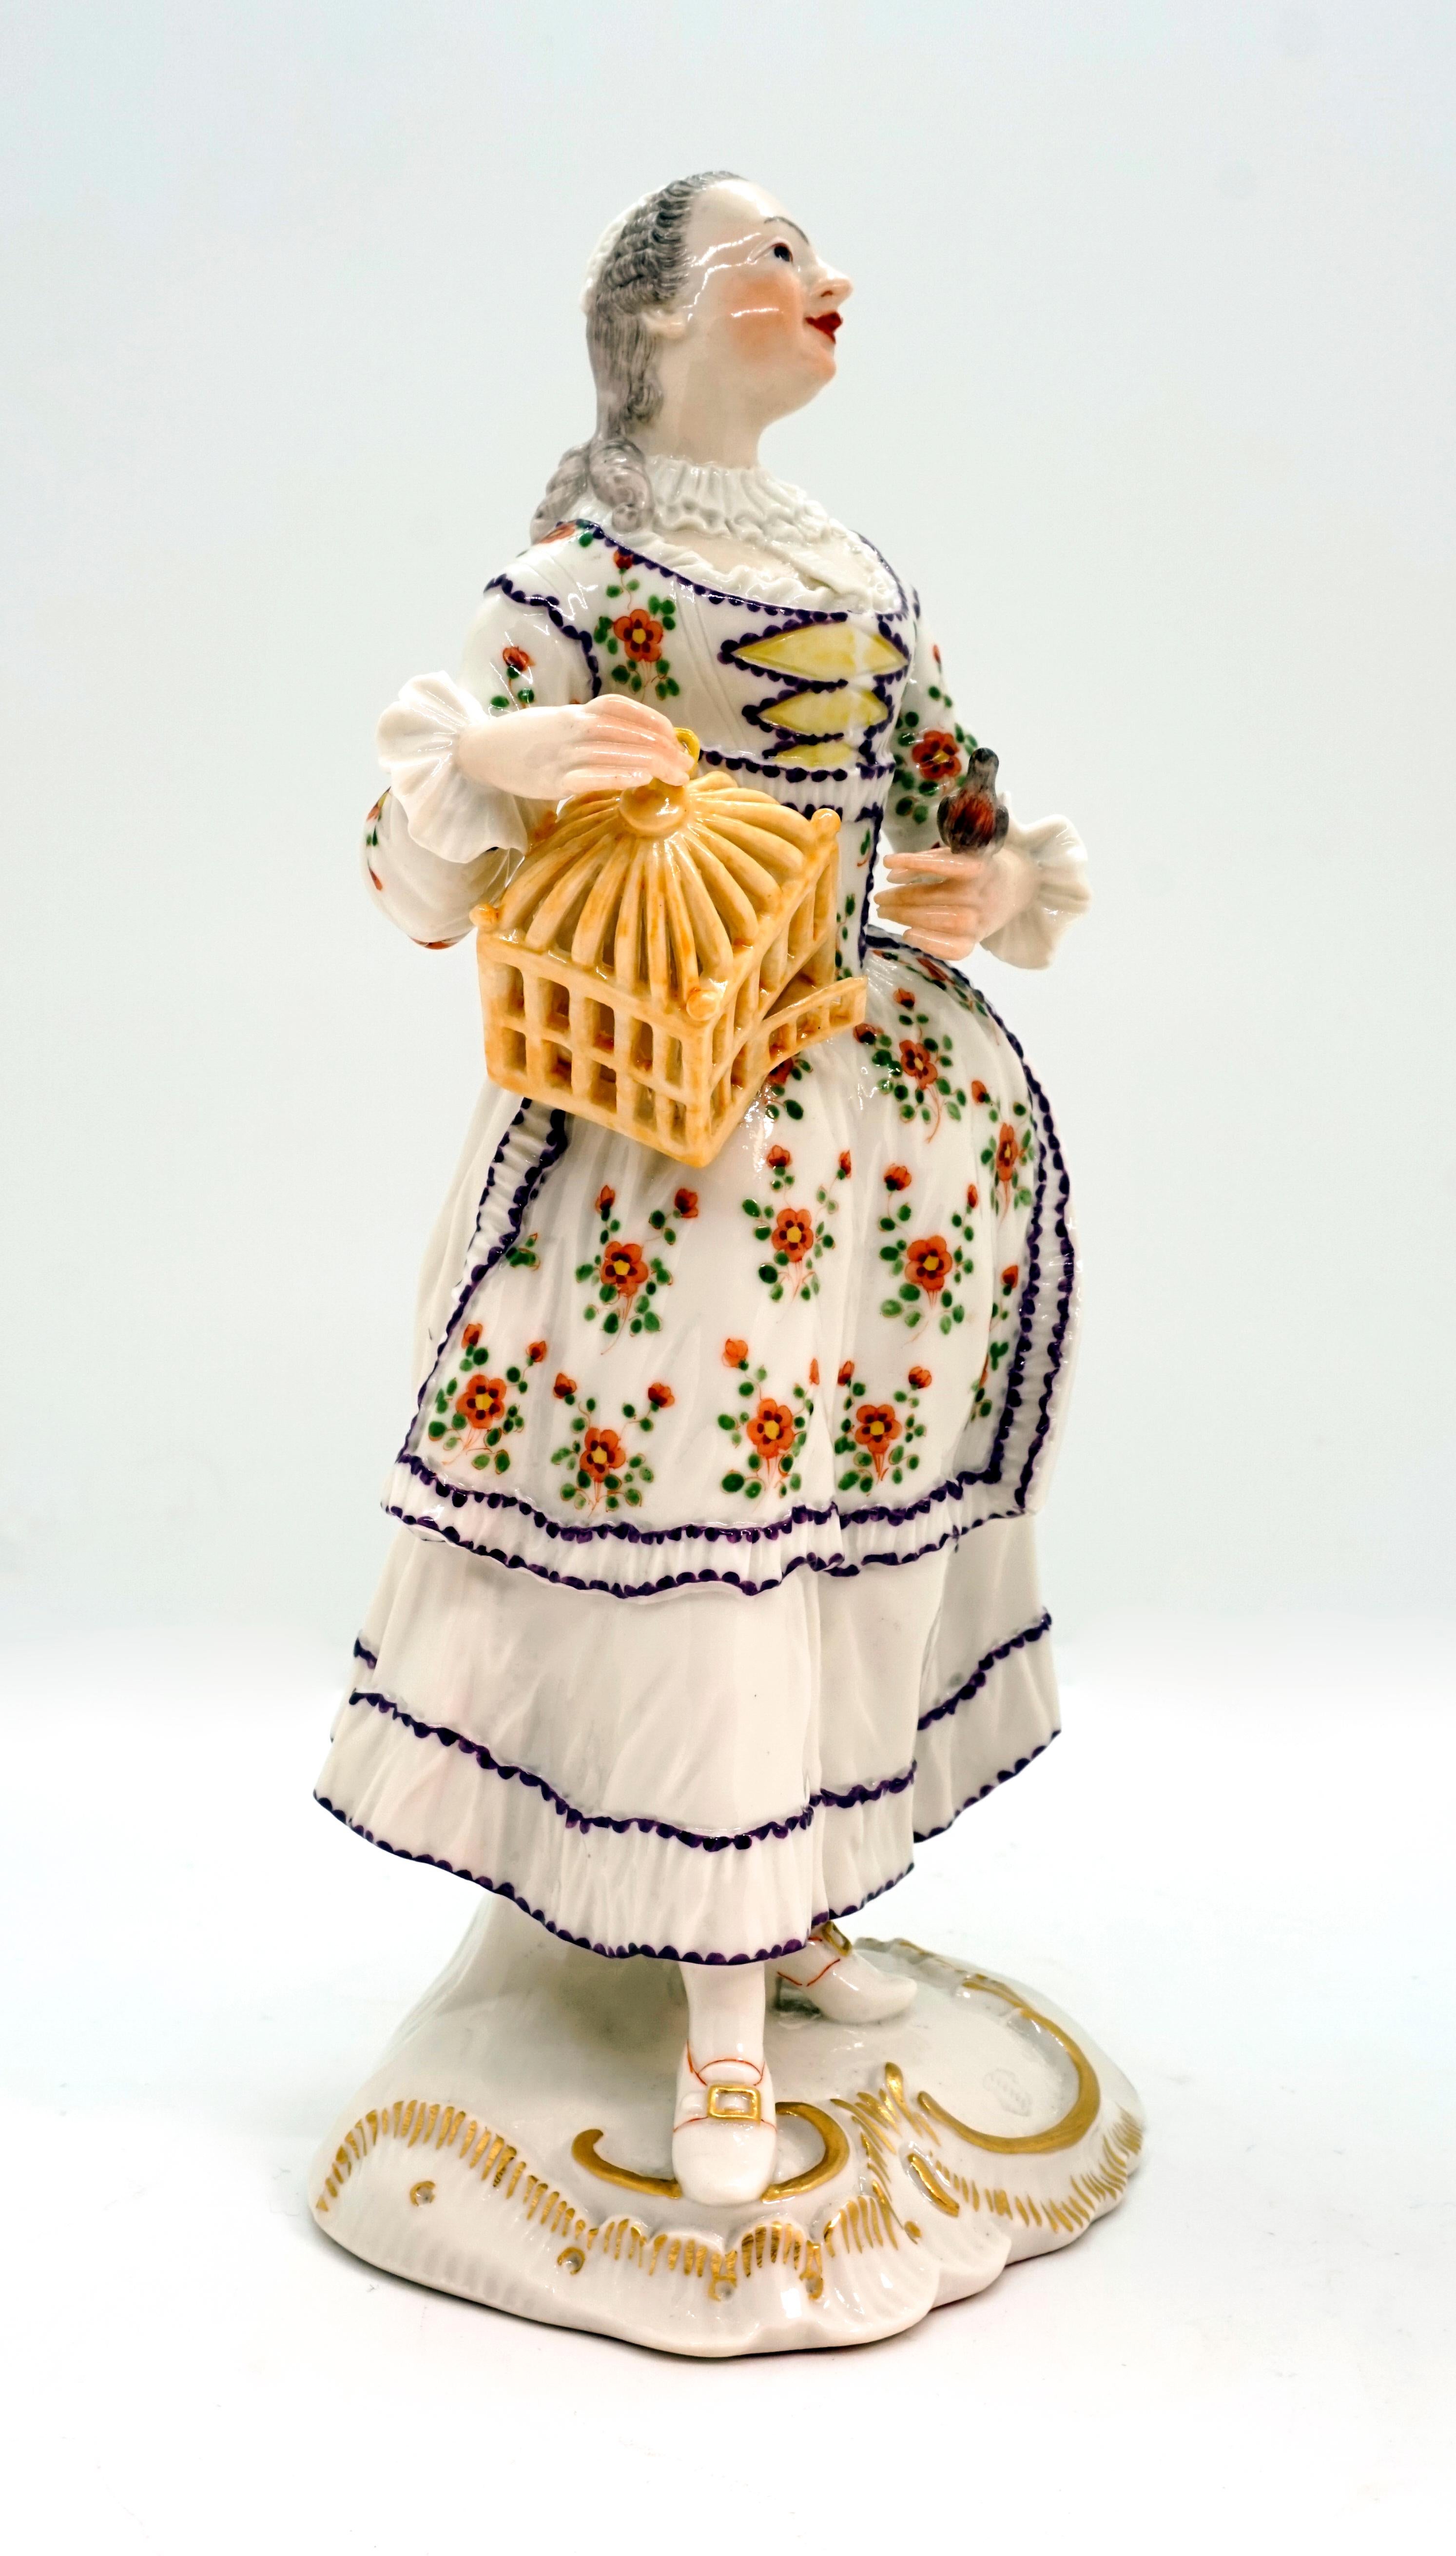 Figurine très rare de l'ancien fabricant Frankenthal Allemagne.
La dame, habillée dans le style rococo : robe blanche avec corsage et tablier fleuris, bonnet blanc, tient de la main droite une cage à oiseaux ouverte, posée sur sa hanche. L'oiseau